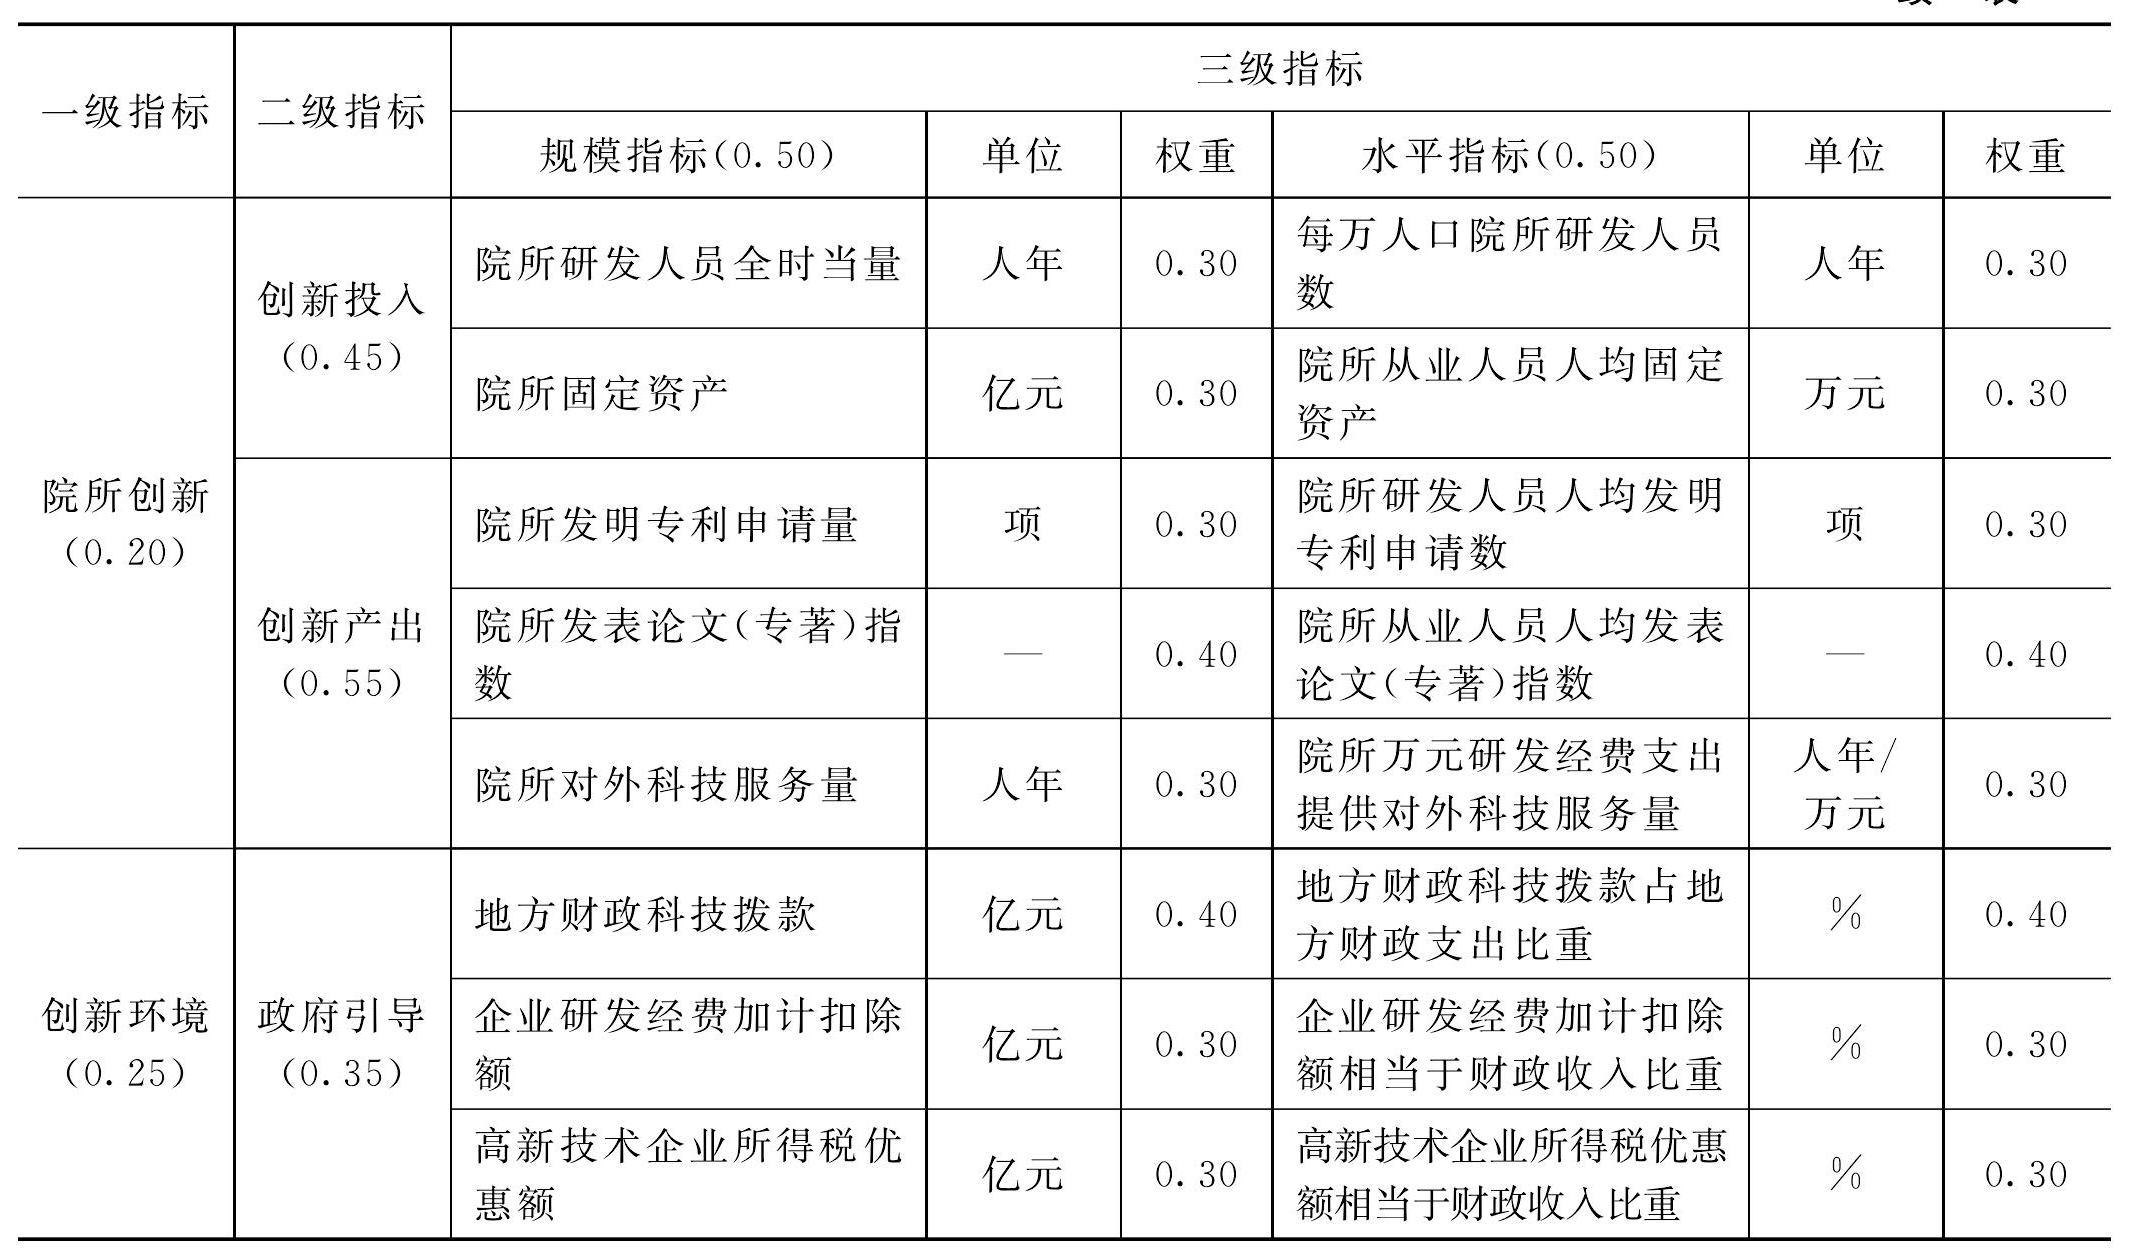 二、浙江省创新能力评价指标体系